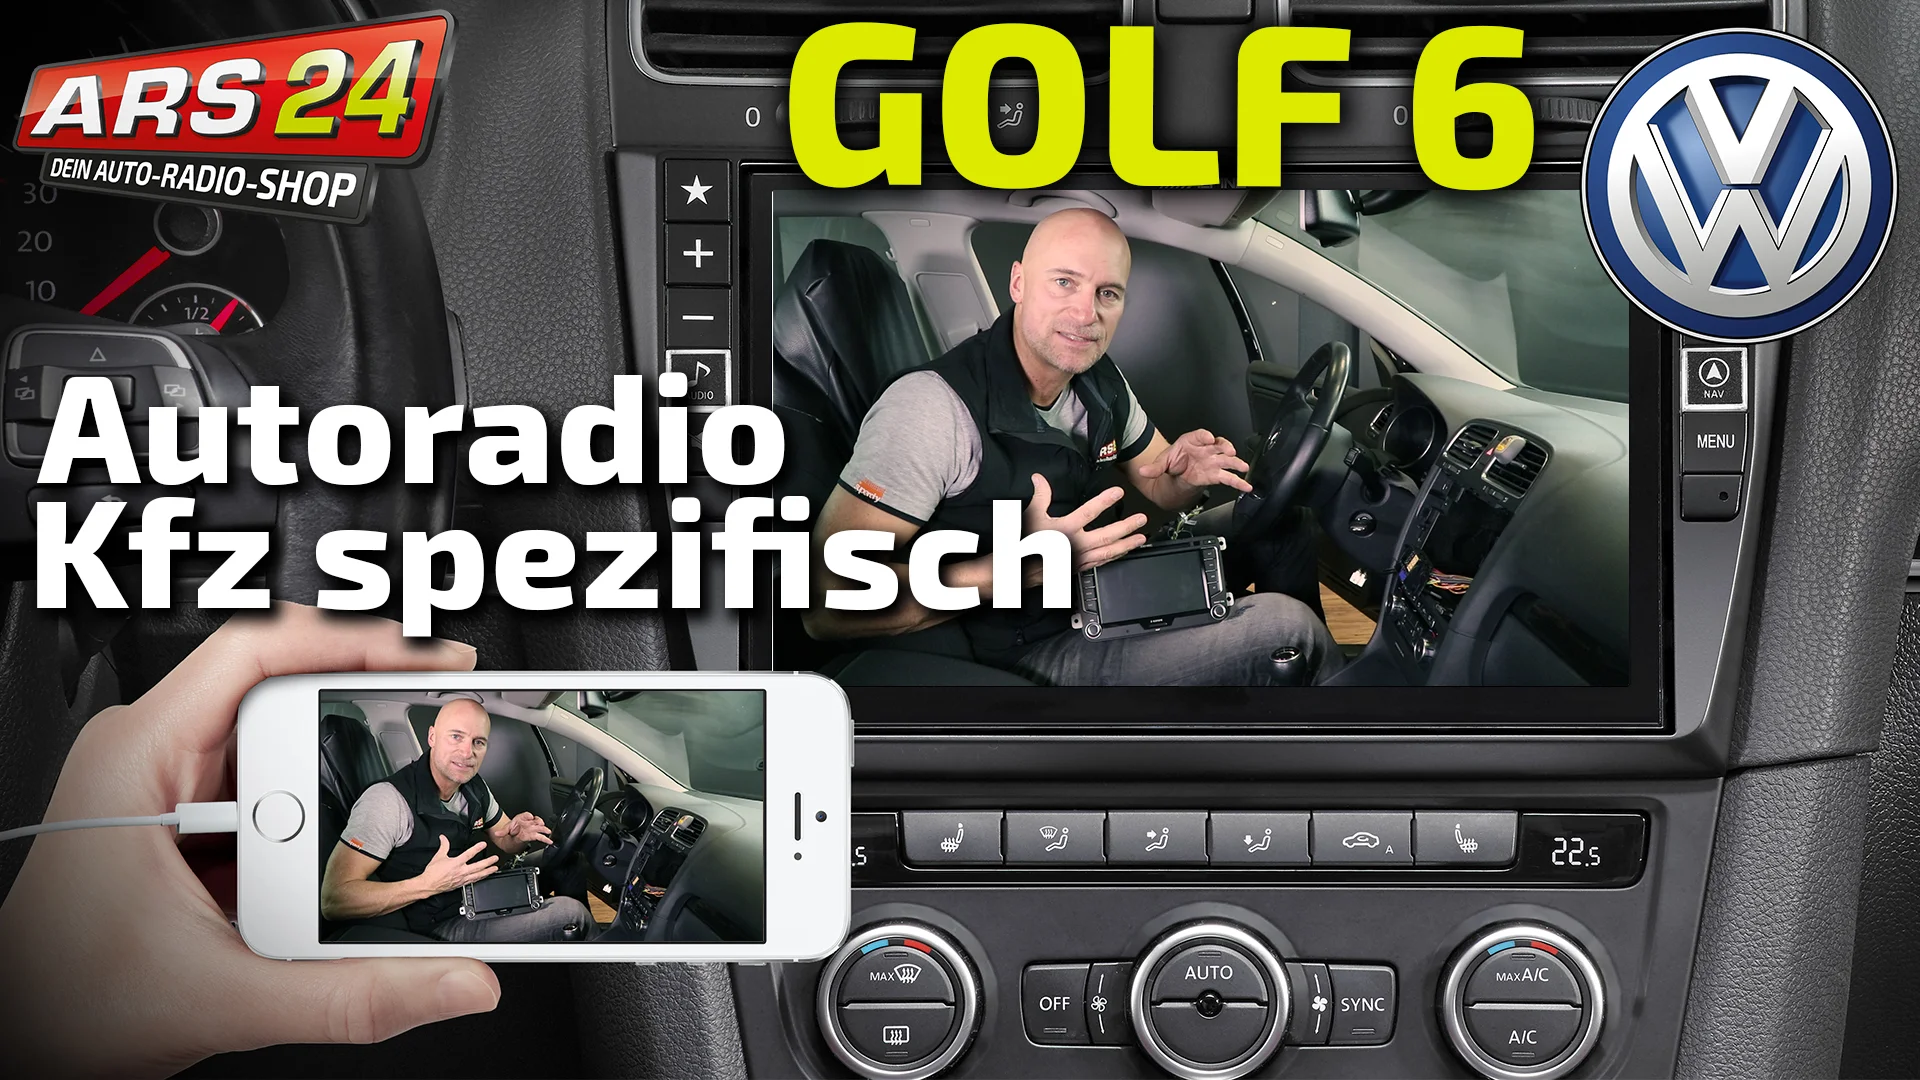 Autoradio für VW Golf 6 mit unglaublich großen 9 Bildschirm einbauen, TUTORIAL